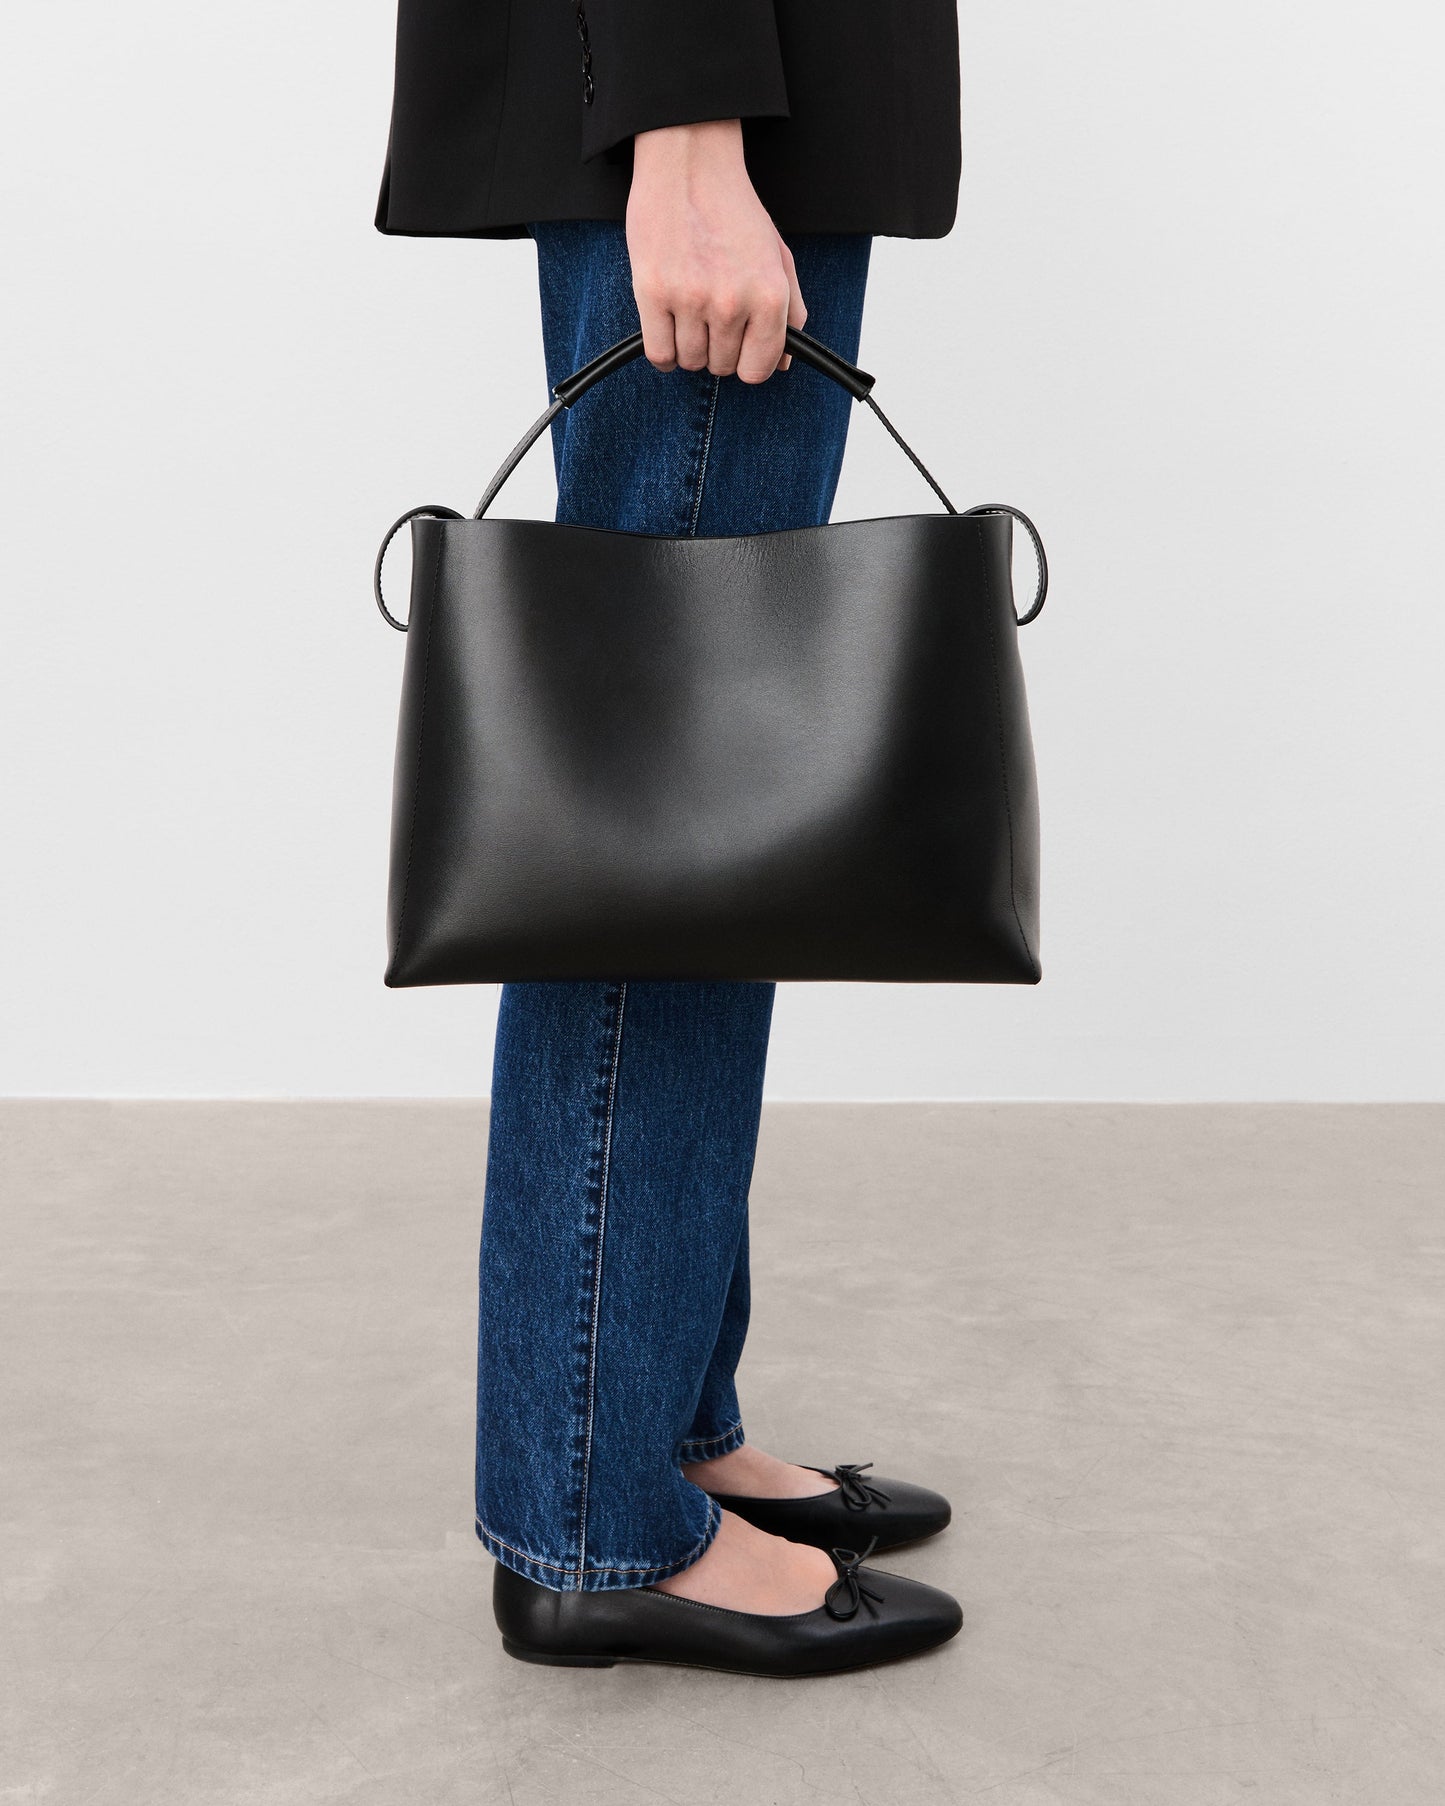 Hedda Grande Handbag Leather Black